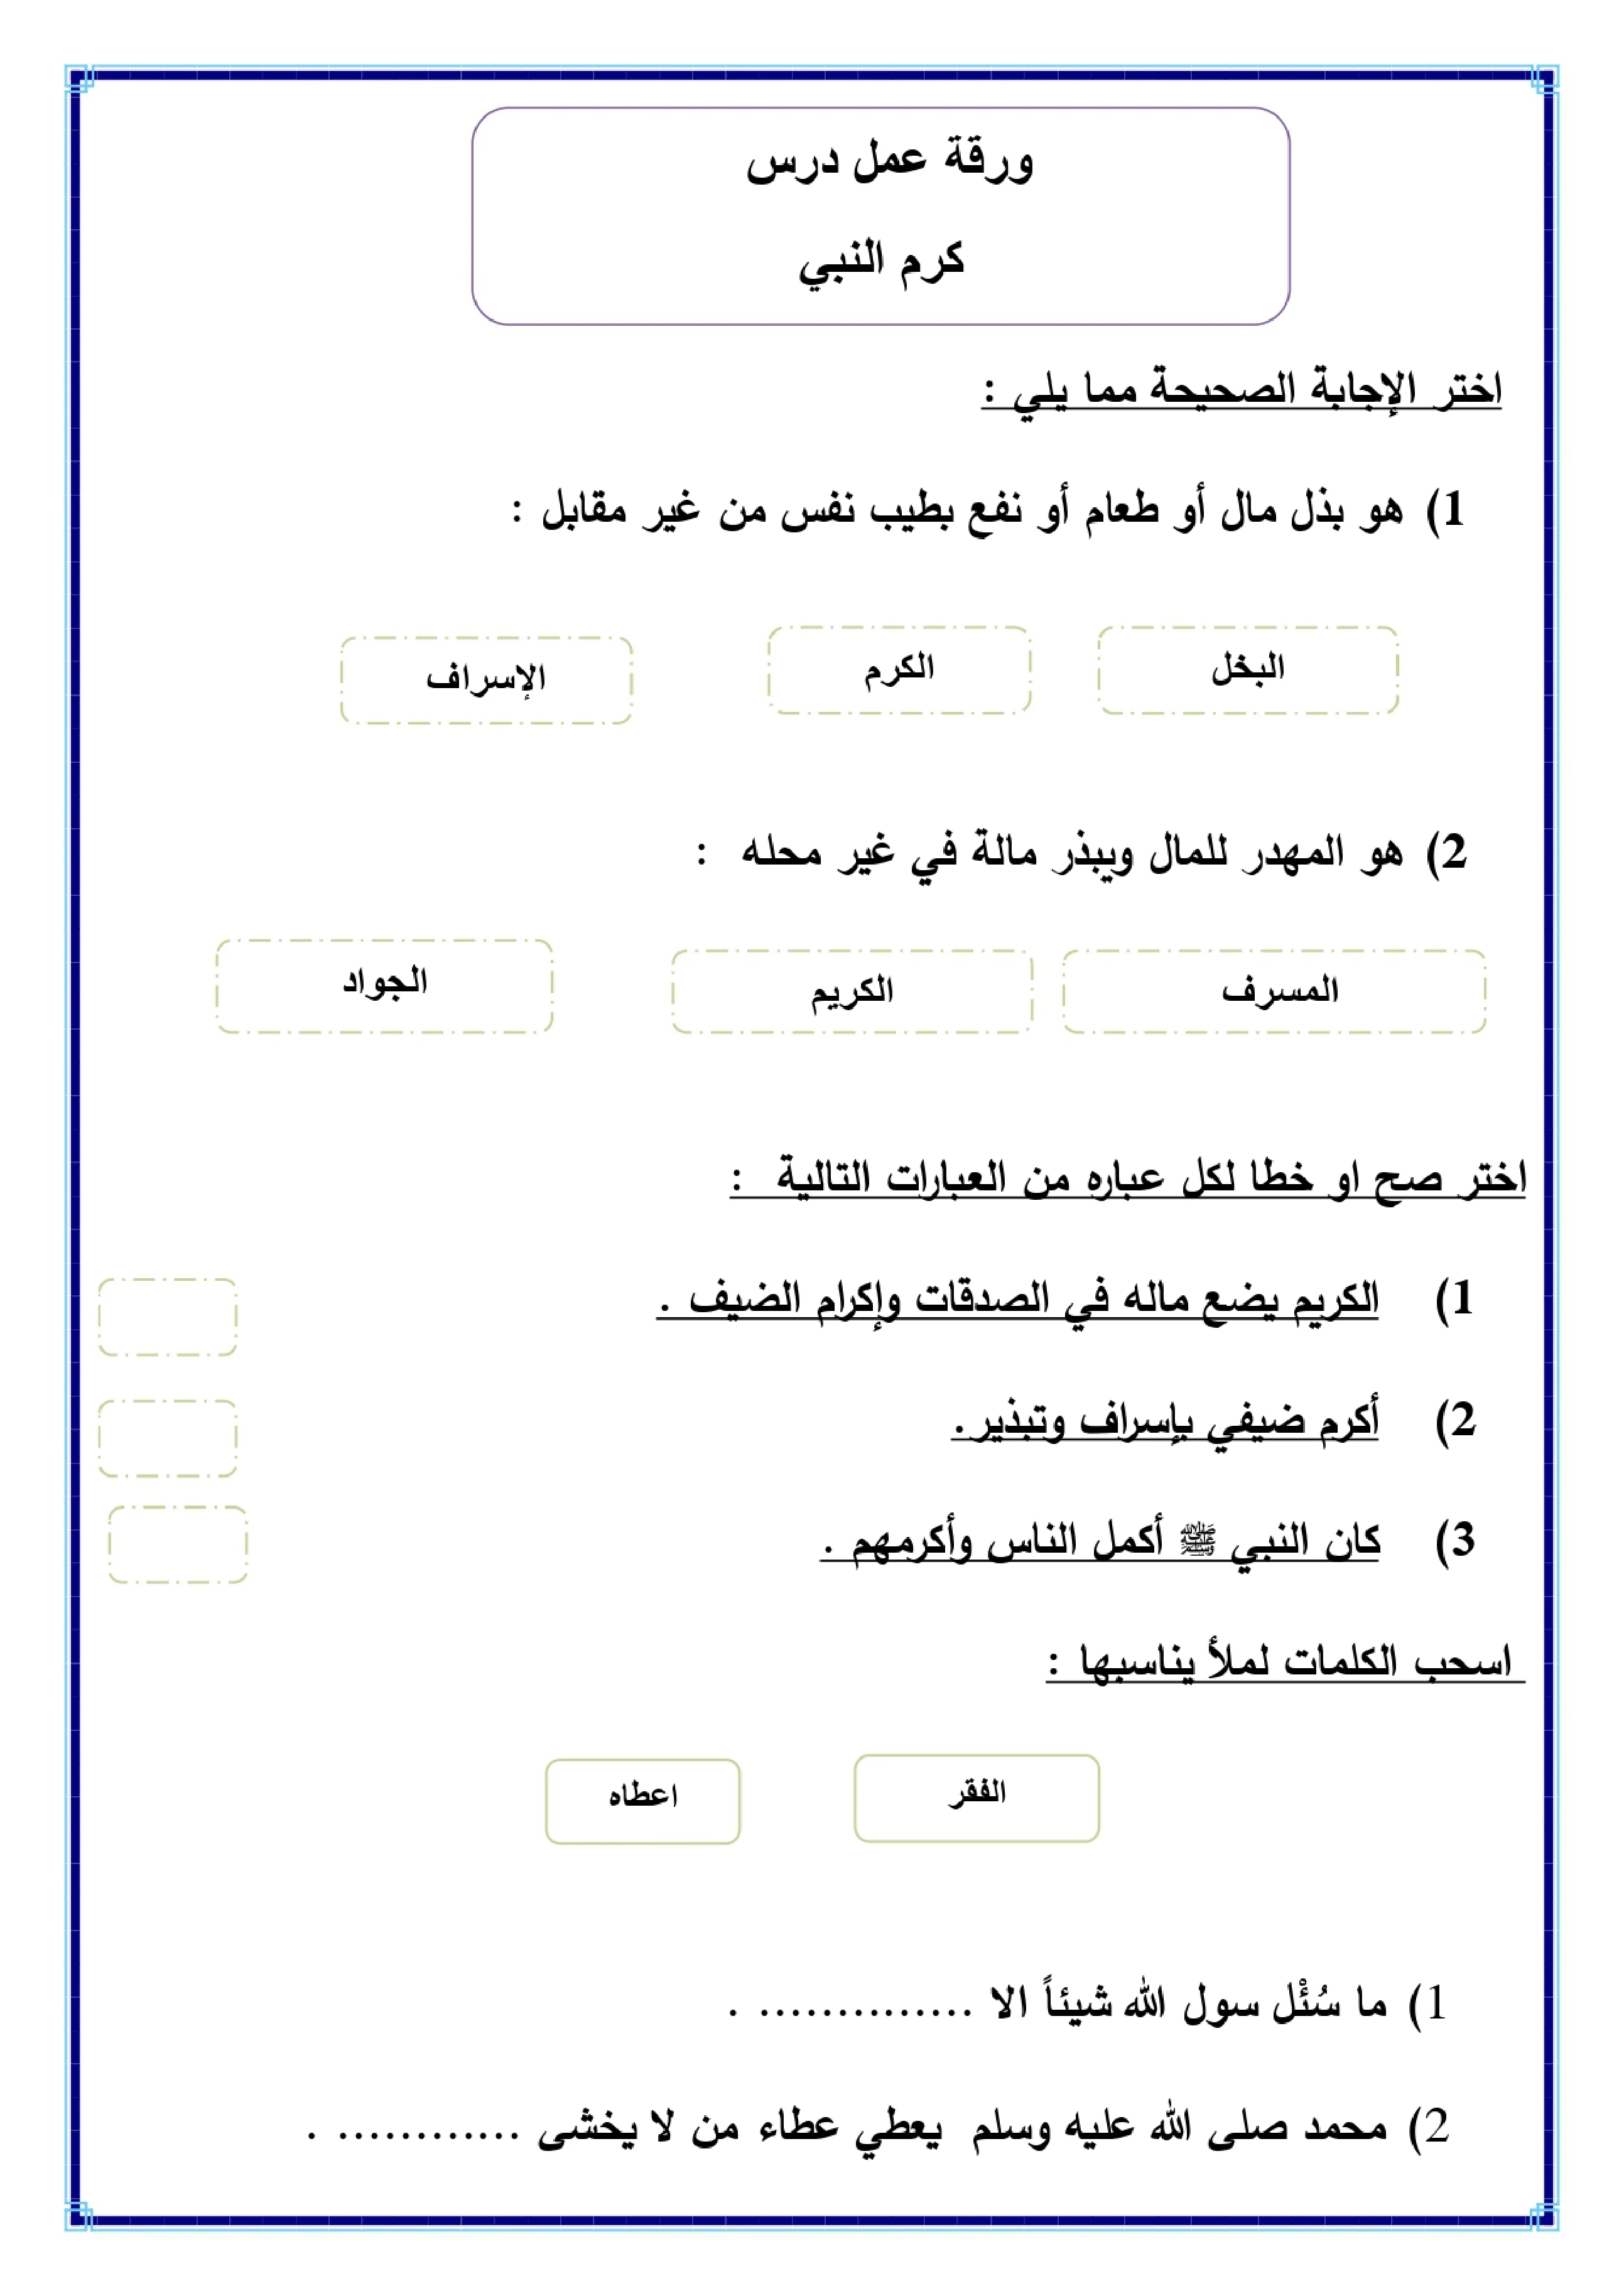 أوراق عمل لمادة التربية الإسلامية الصف الخامس الابتدائي الفصل الدراسي الثالث pdf تحميل مباشر مجاني